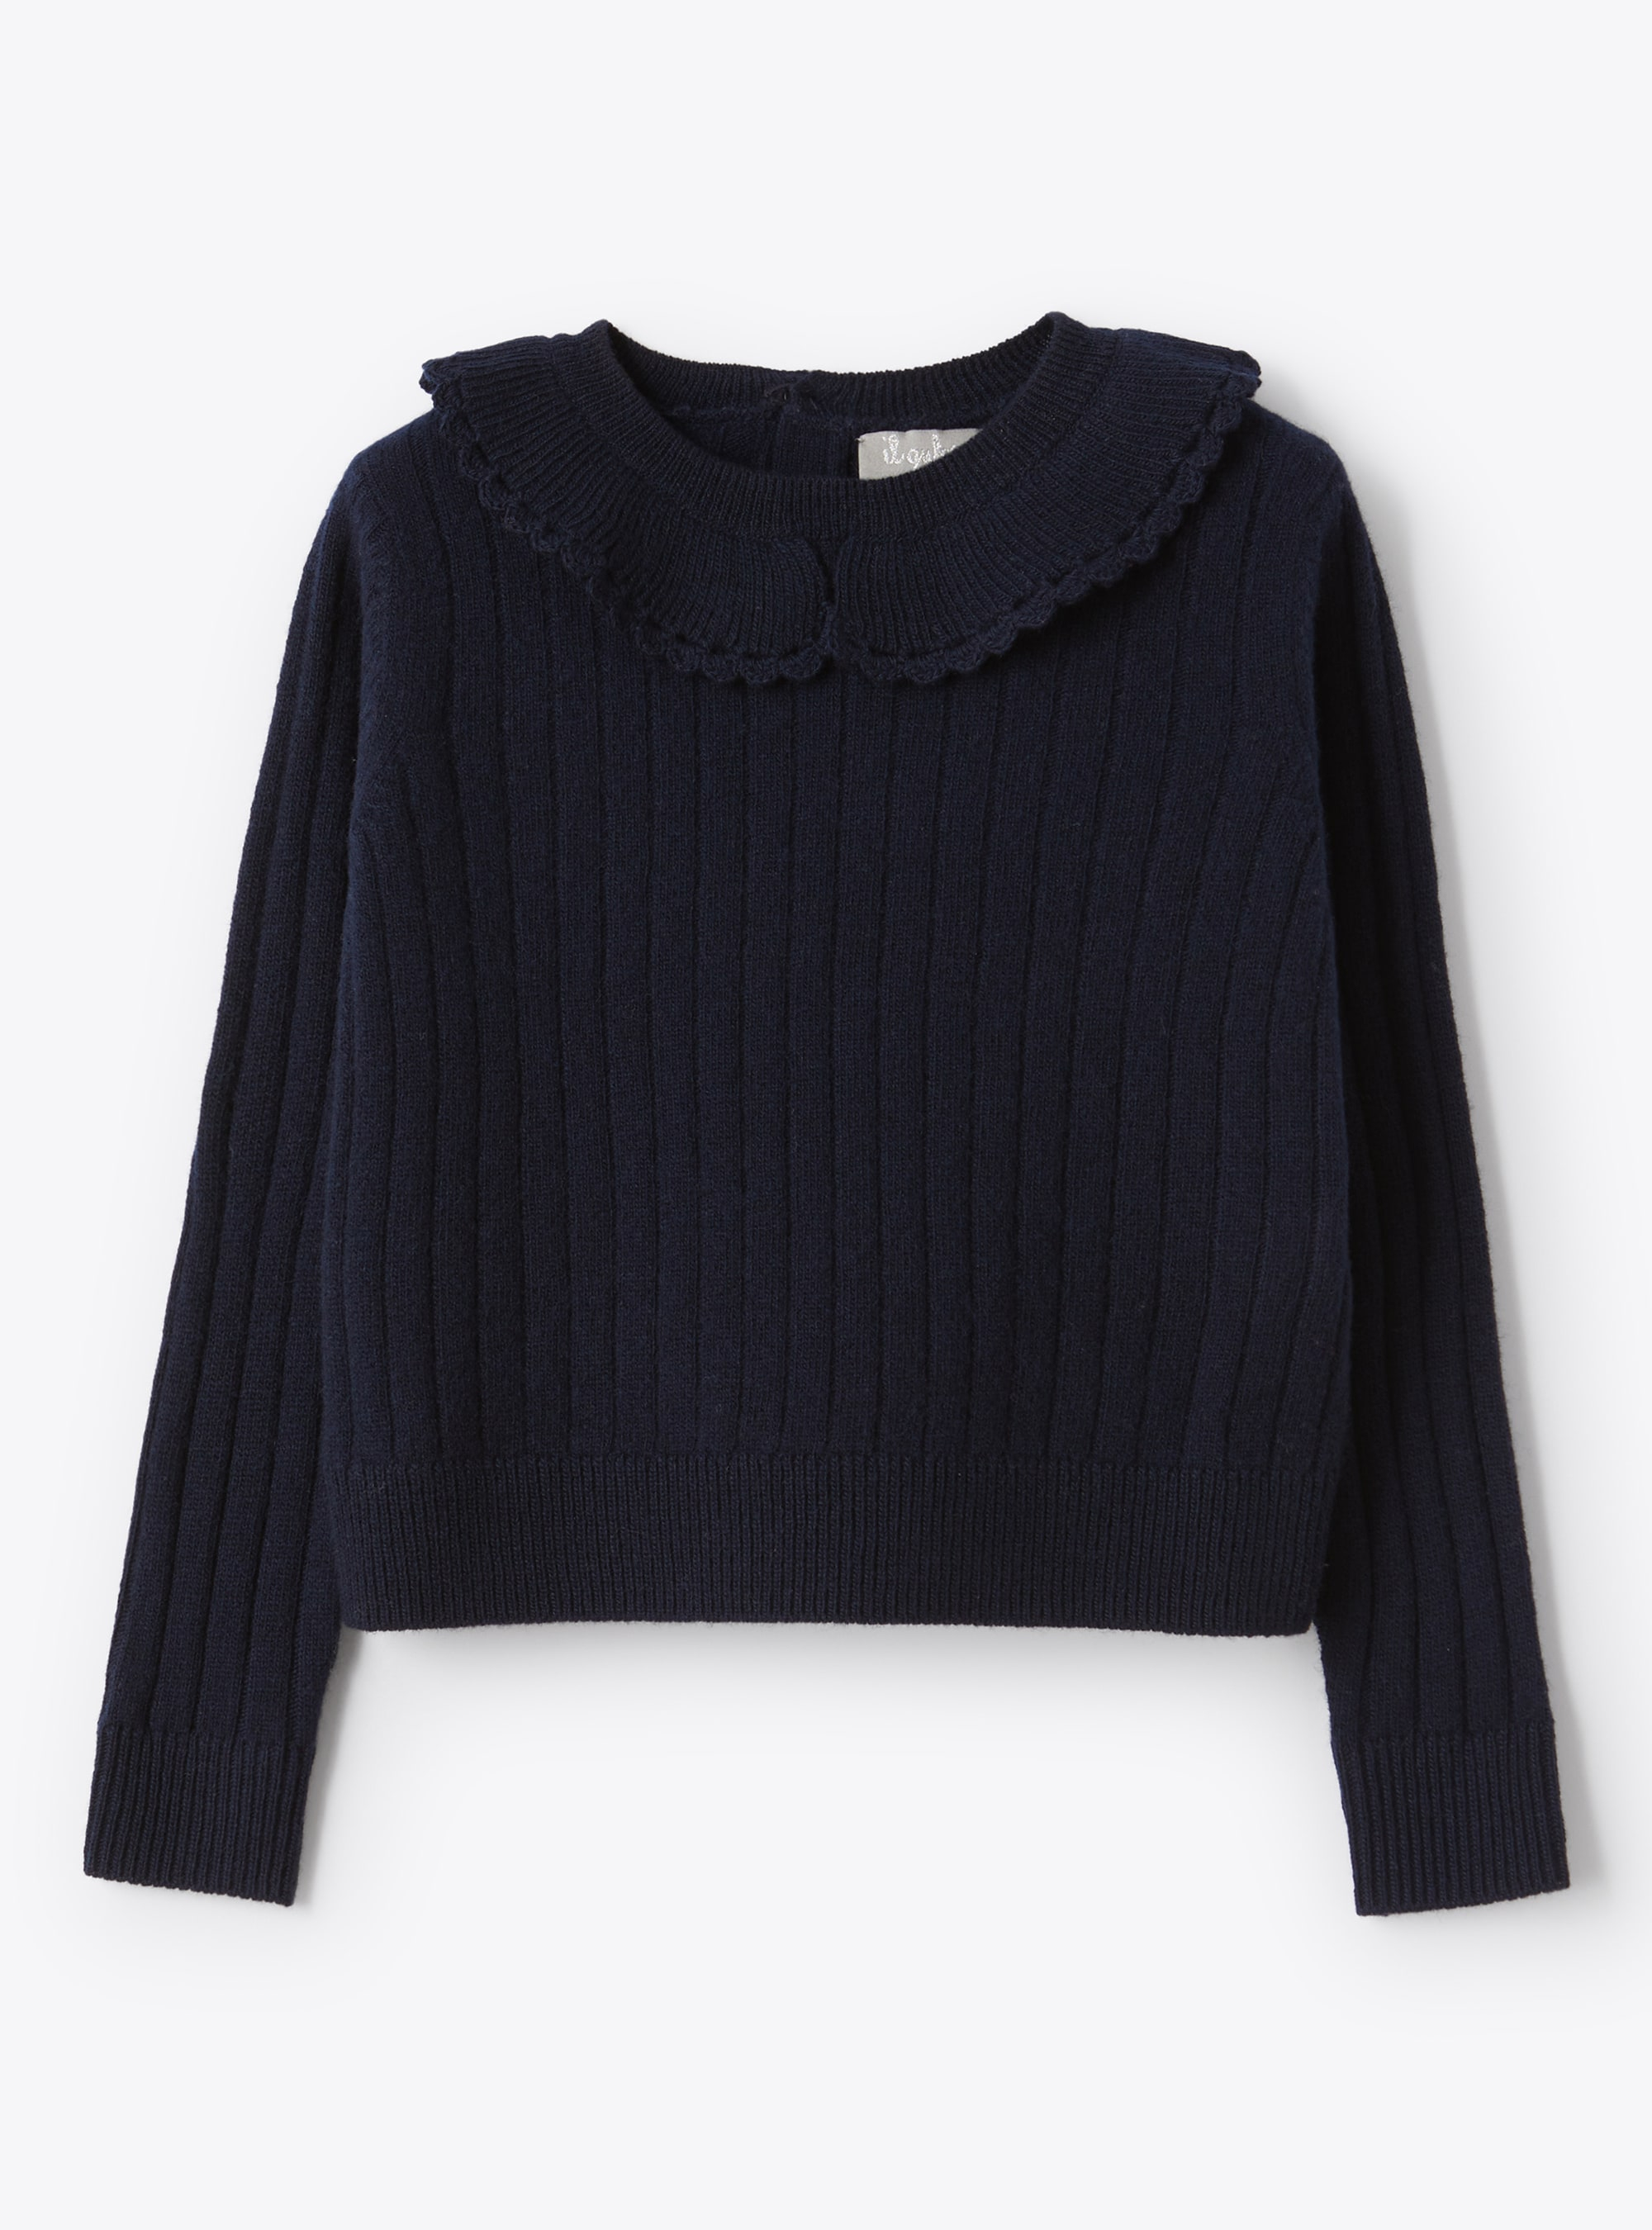 Scallop trim ruffle collar sweater - Sweaters - Il Gufo